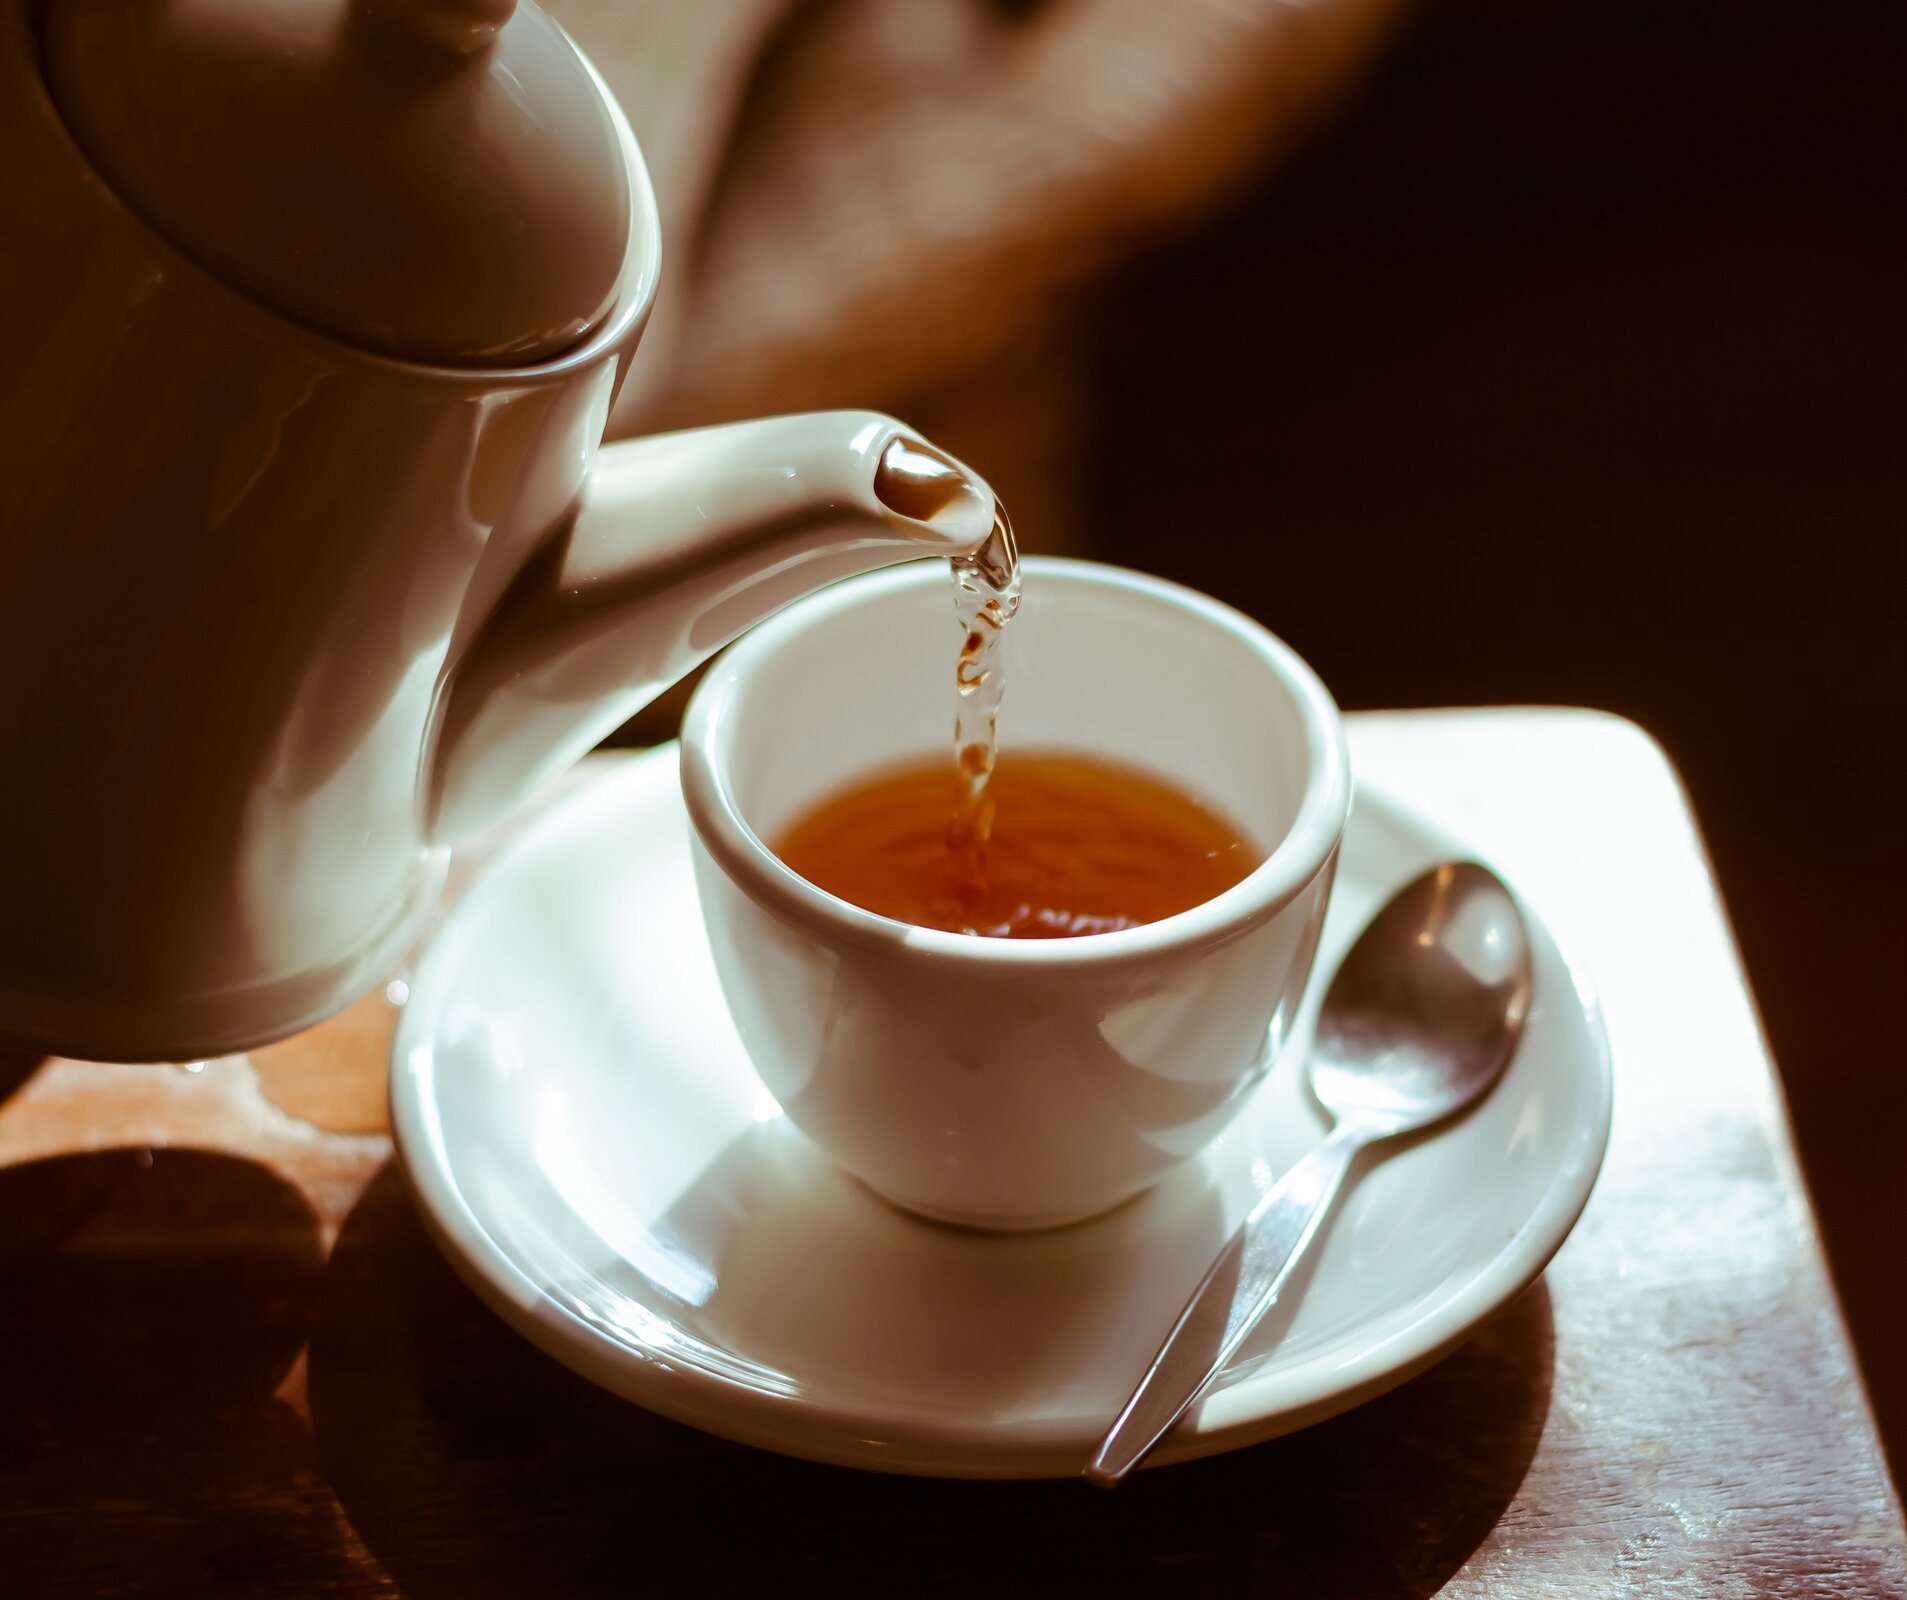 Rys. 2. Zdjęcie przedstawia filiżankę z odrobiną esencji herbaty i pochylonym nad nią imbryczkiem nalewającym gorącą wodę. Filiżanka stoi na talerzyku z łyżeczką.